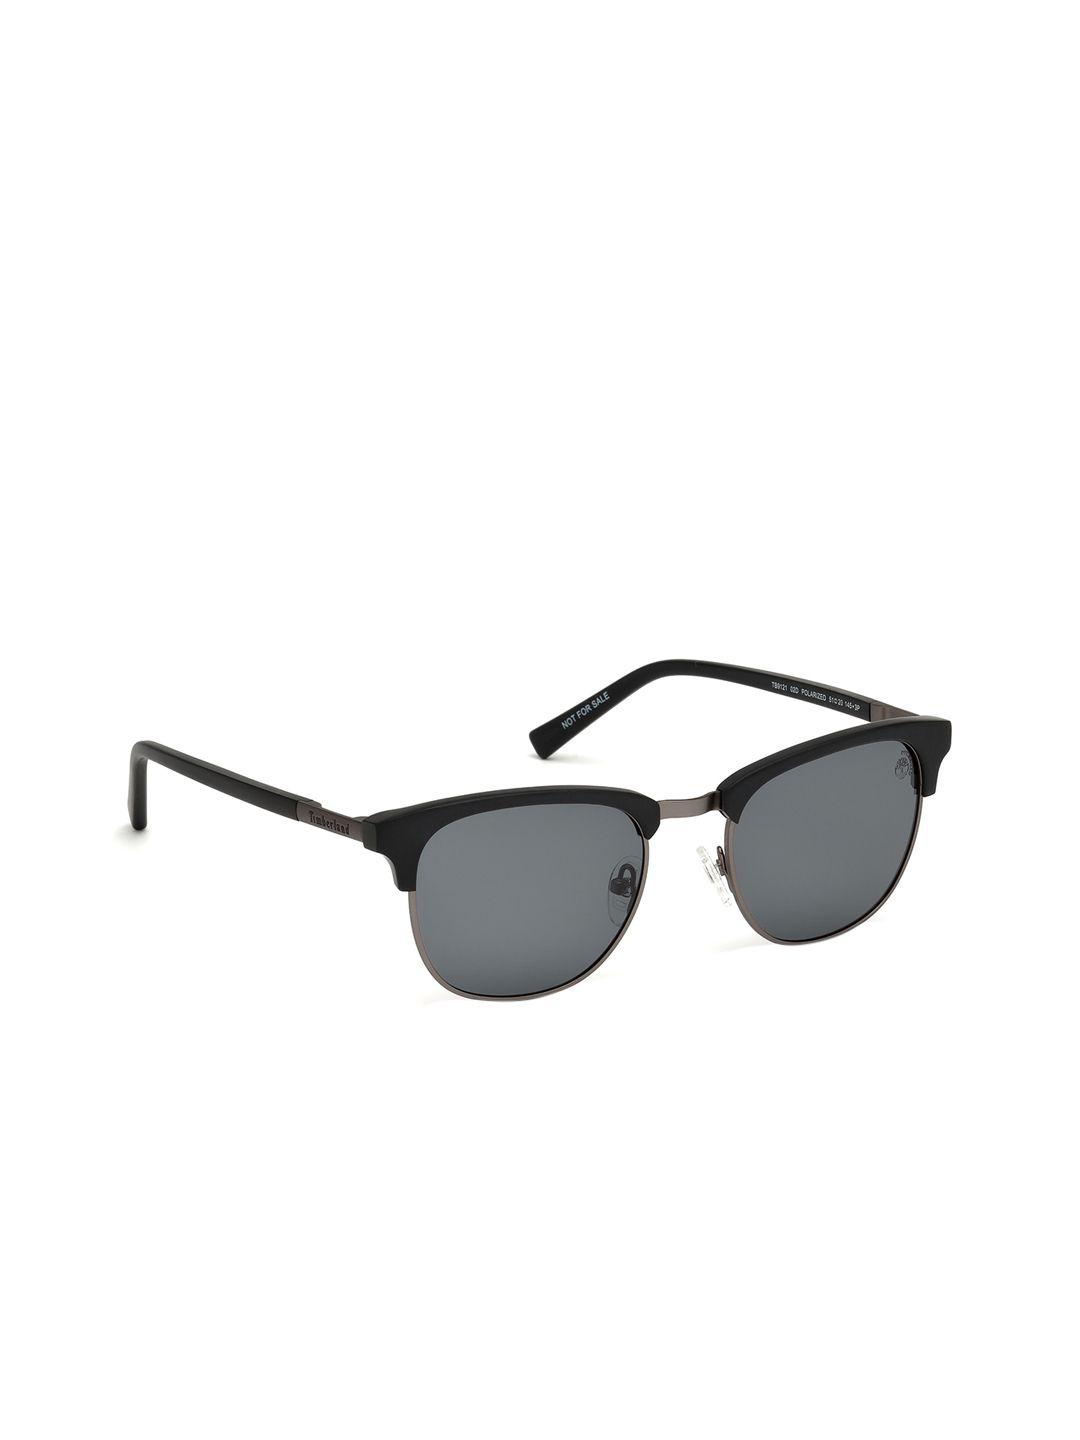 timberland men rectangular sunglasses tb9121 51 02d